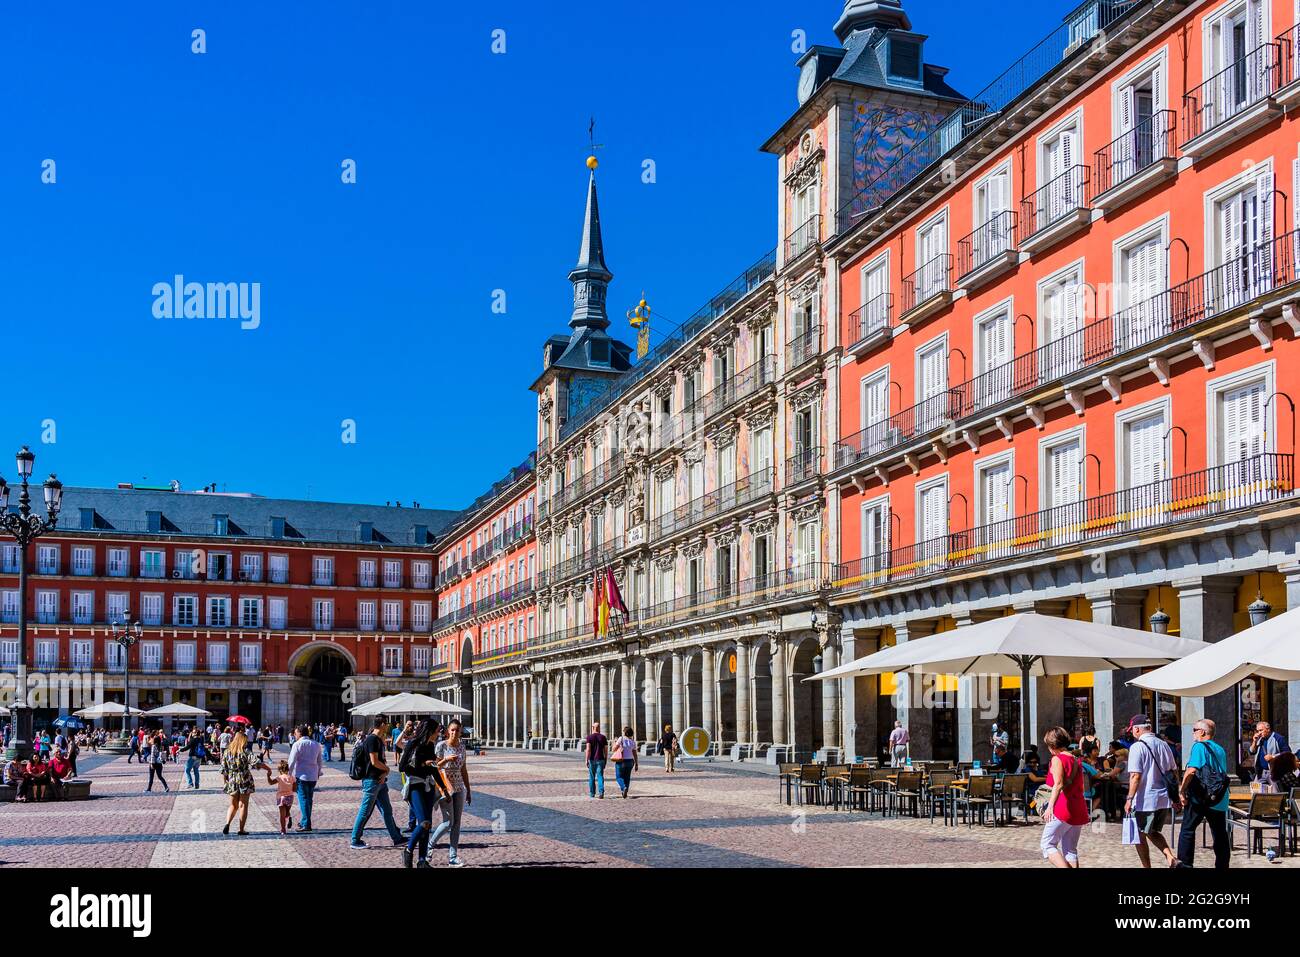 Die Plaza Mayor, Hauptplatz, ist ein großer öffentlicher Ort im Herzen von Madrid, der Hauptstadt Spaniens. Es war einst das Zentrum der Altstadt von Madrid. Es war das erste Stockfoto